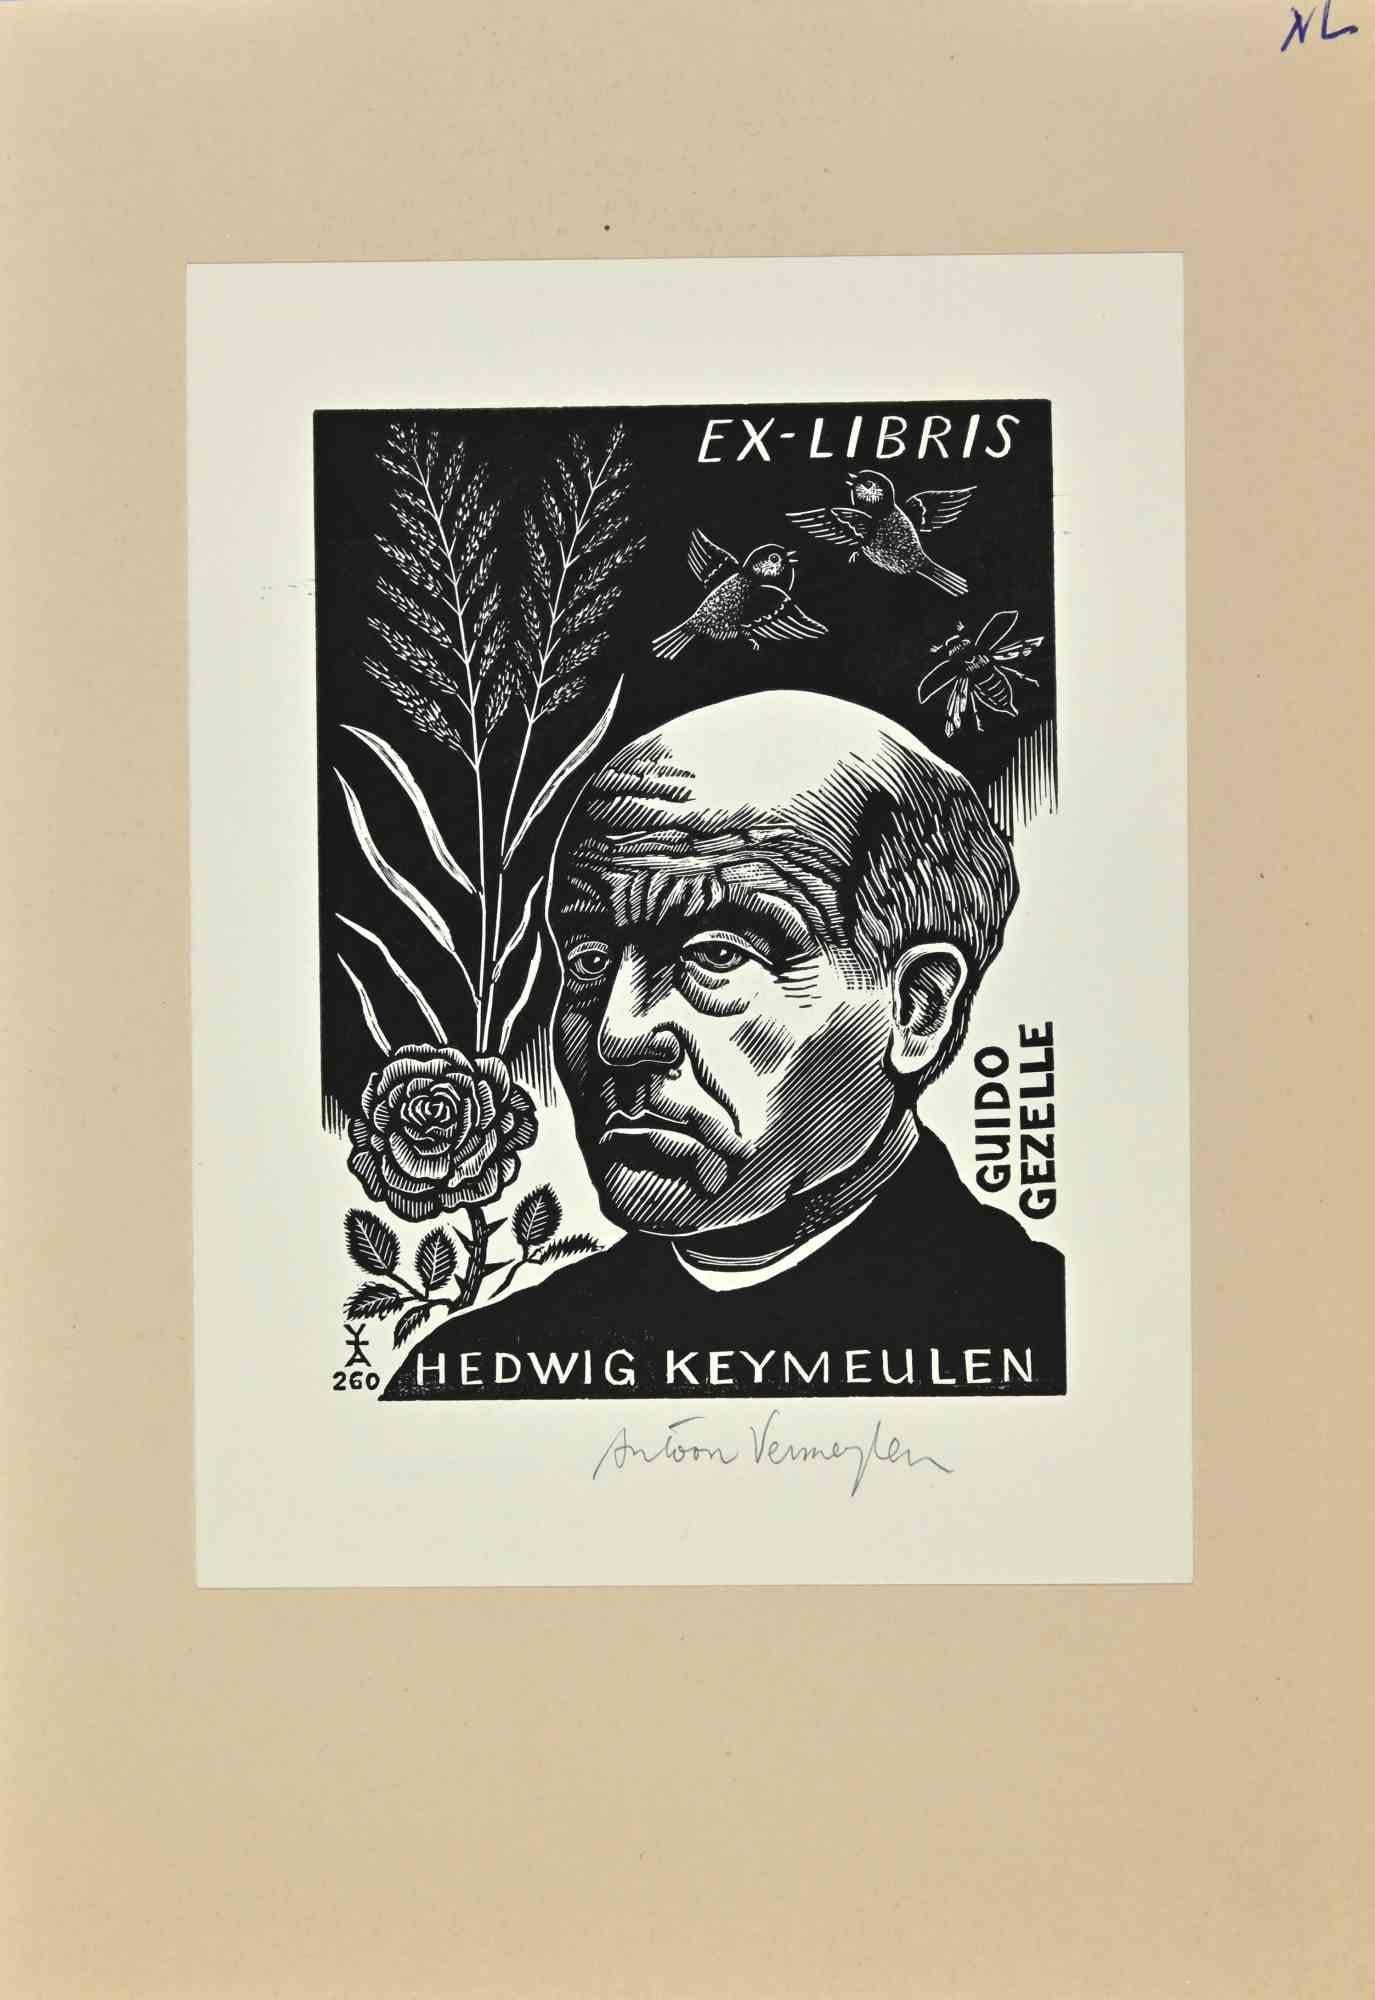 Ex-Libris Hedwig Keymeulen est une oeuvre d'art réalisée en 2001 par l'artiste belge Antoon Vermeylen. 

Gravure sur bois B./W. sur papier. Signé à la main dans la marge droite. L'œuvre est collée  carton. 

Dimensions totales : 20 x 14